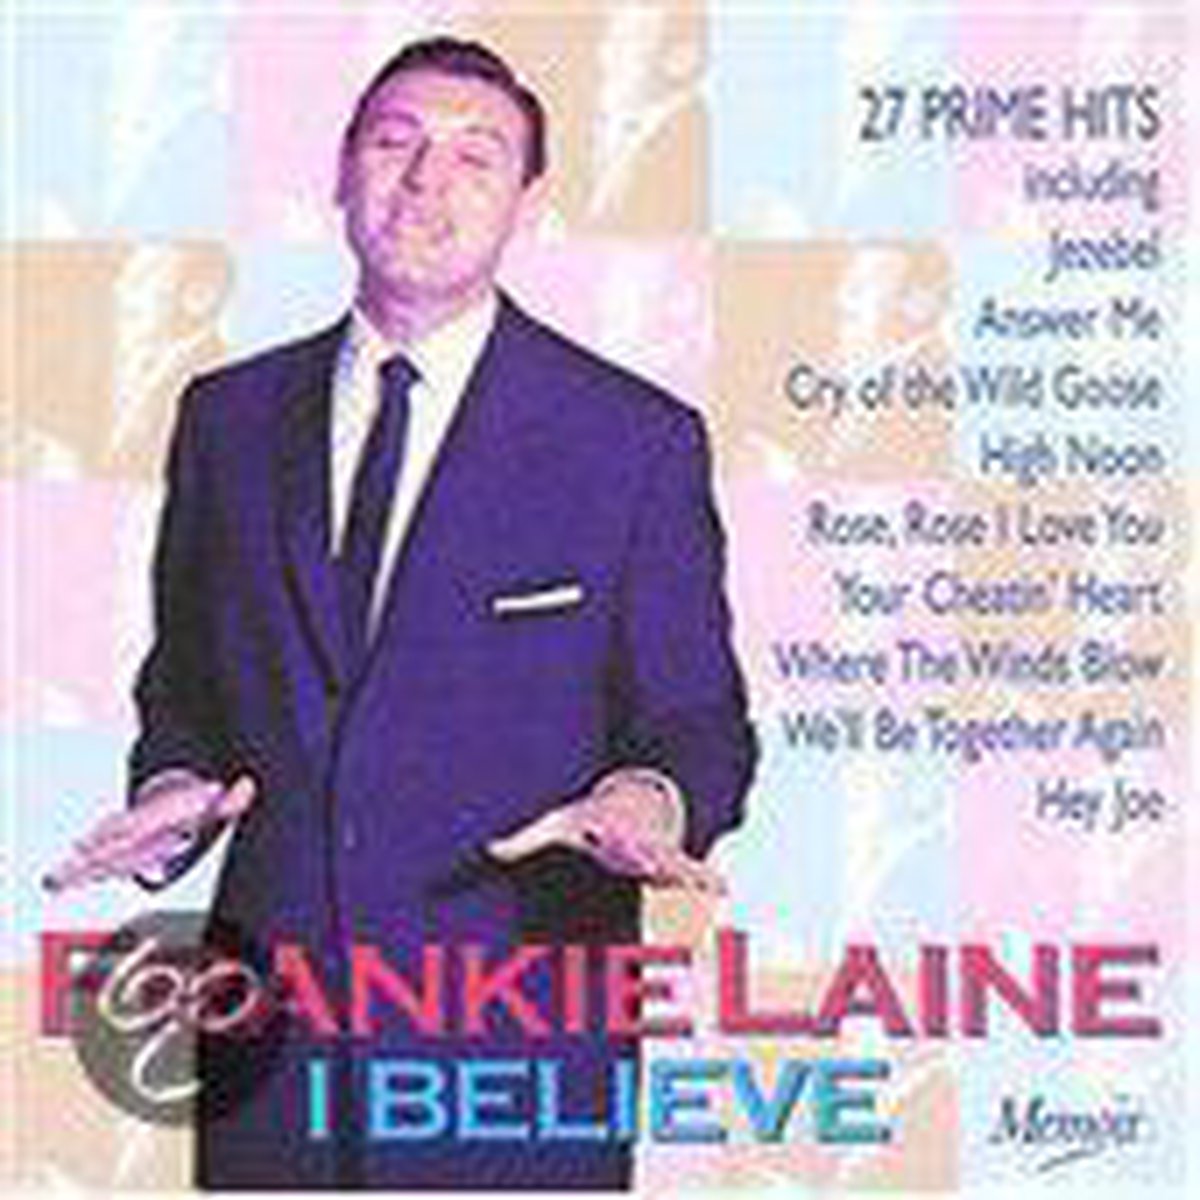 Frankie Laine - I Beieve - Frankie Laine